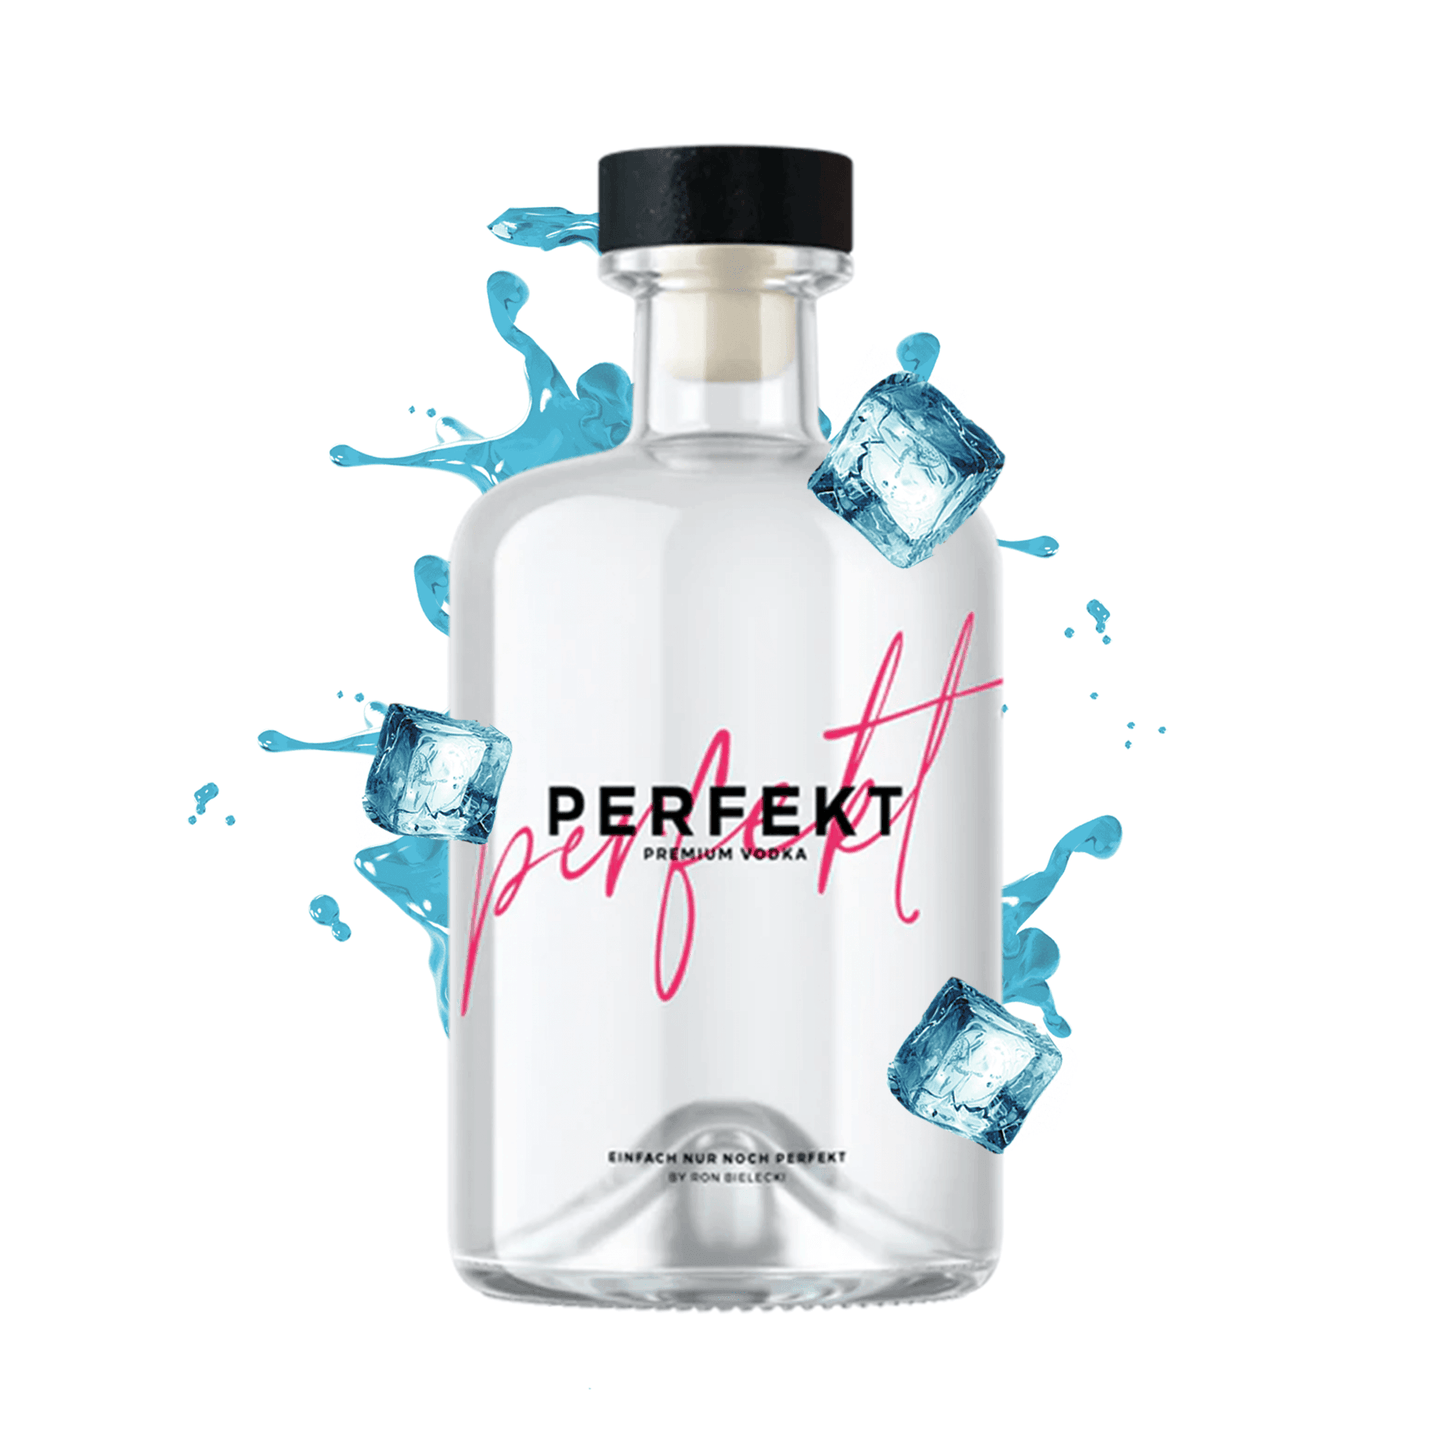 Perfekt Vodka 0,5L 40%vol by Ron Bielecki